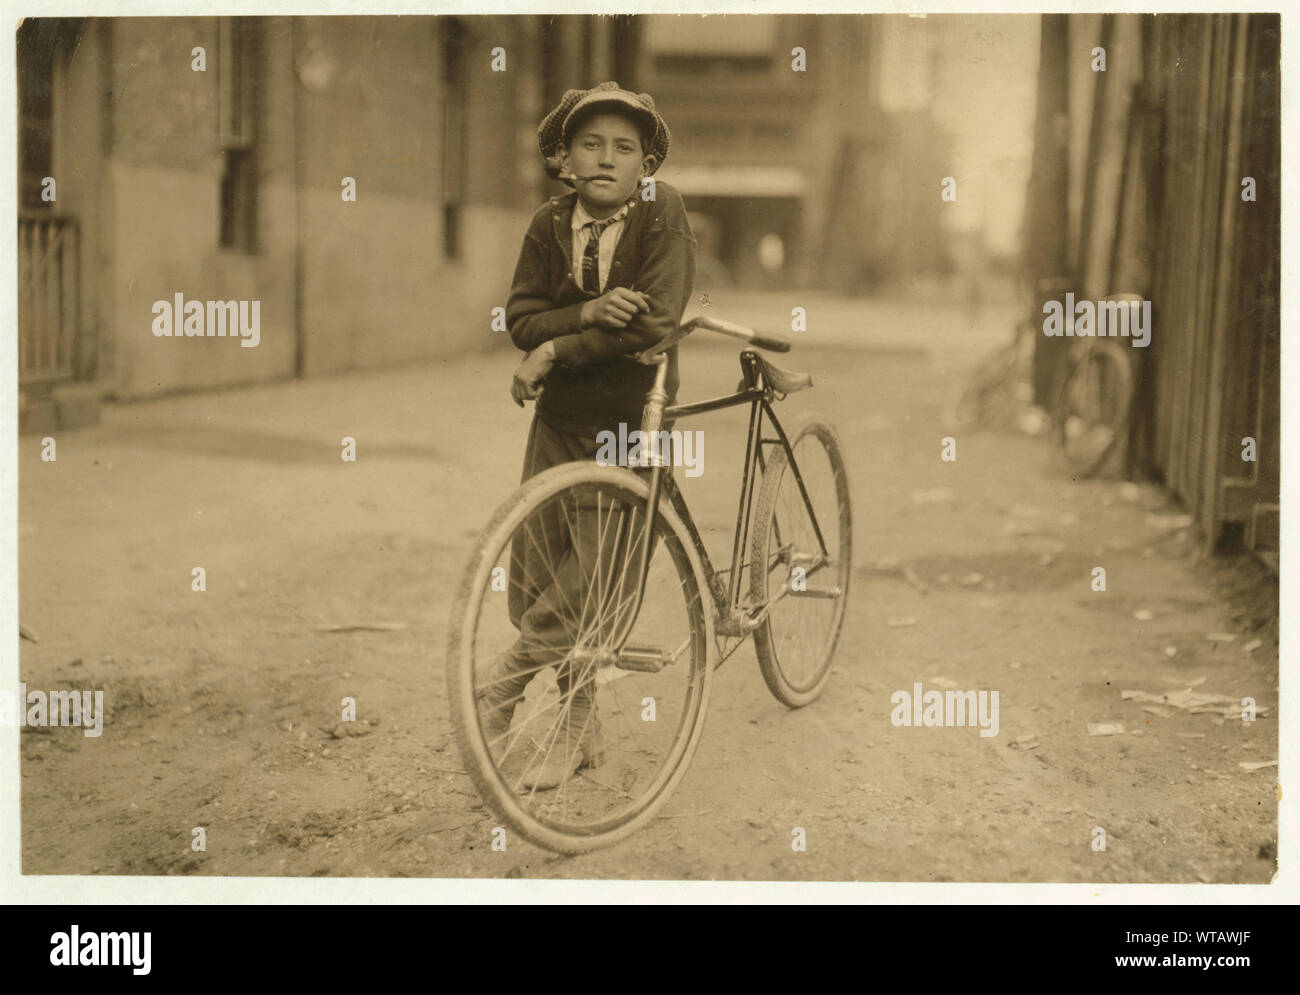 Messenger boy Arbeiten für Mackay Telegraph Company. Sagte, 15 Jahre alt. Rotlicht Gefahren ausgesetzt. Fotografien aus den Aufzeichnungen des Nationalen Kinderarbeit Committee (USA) Stockfoto